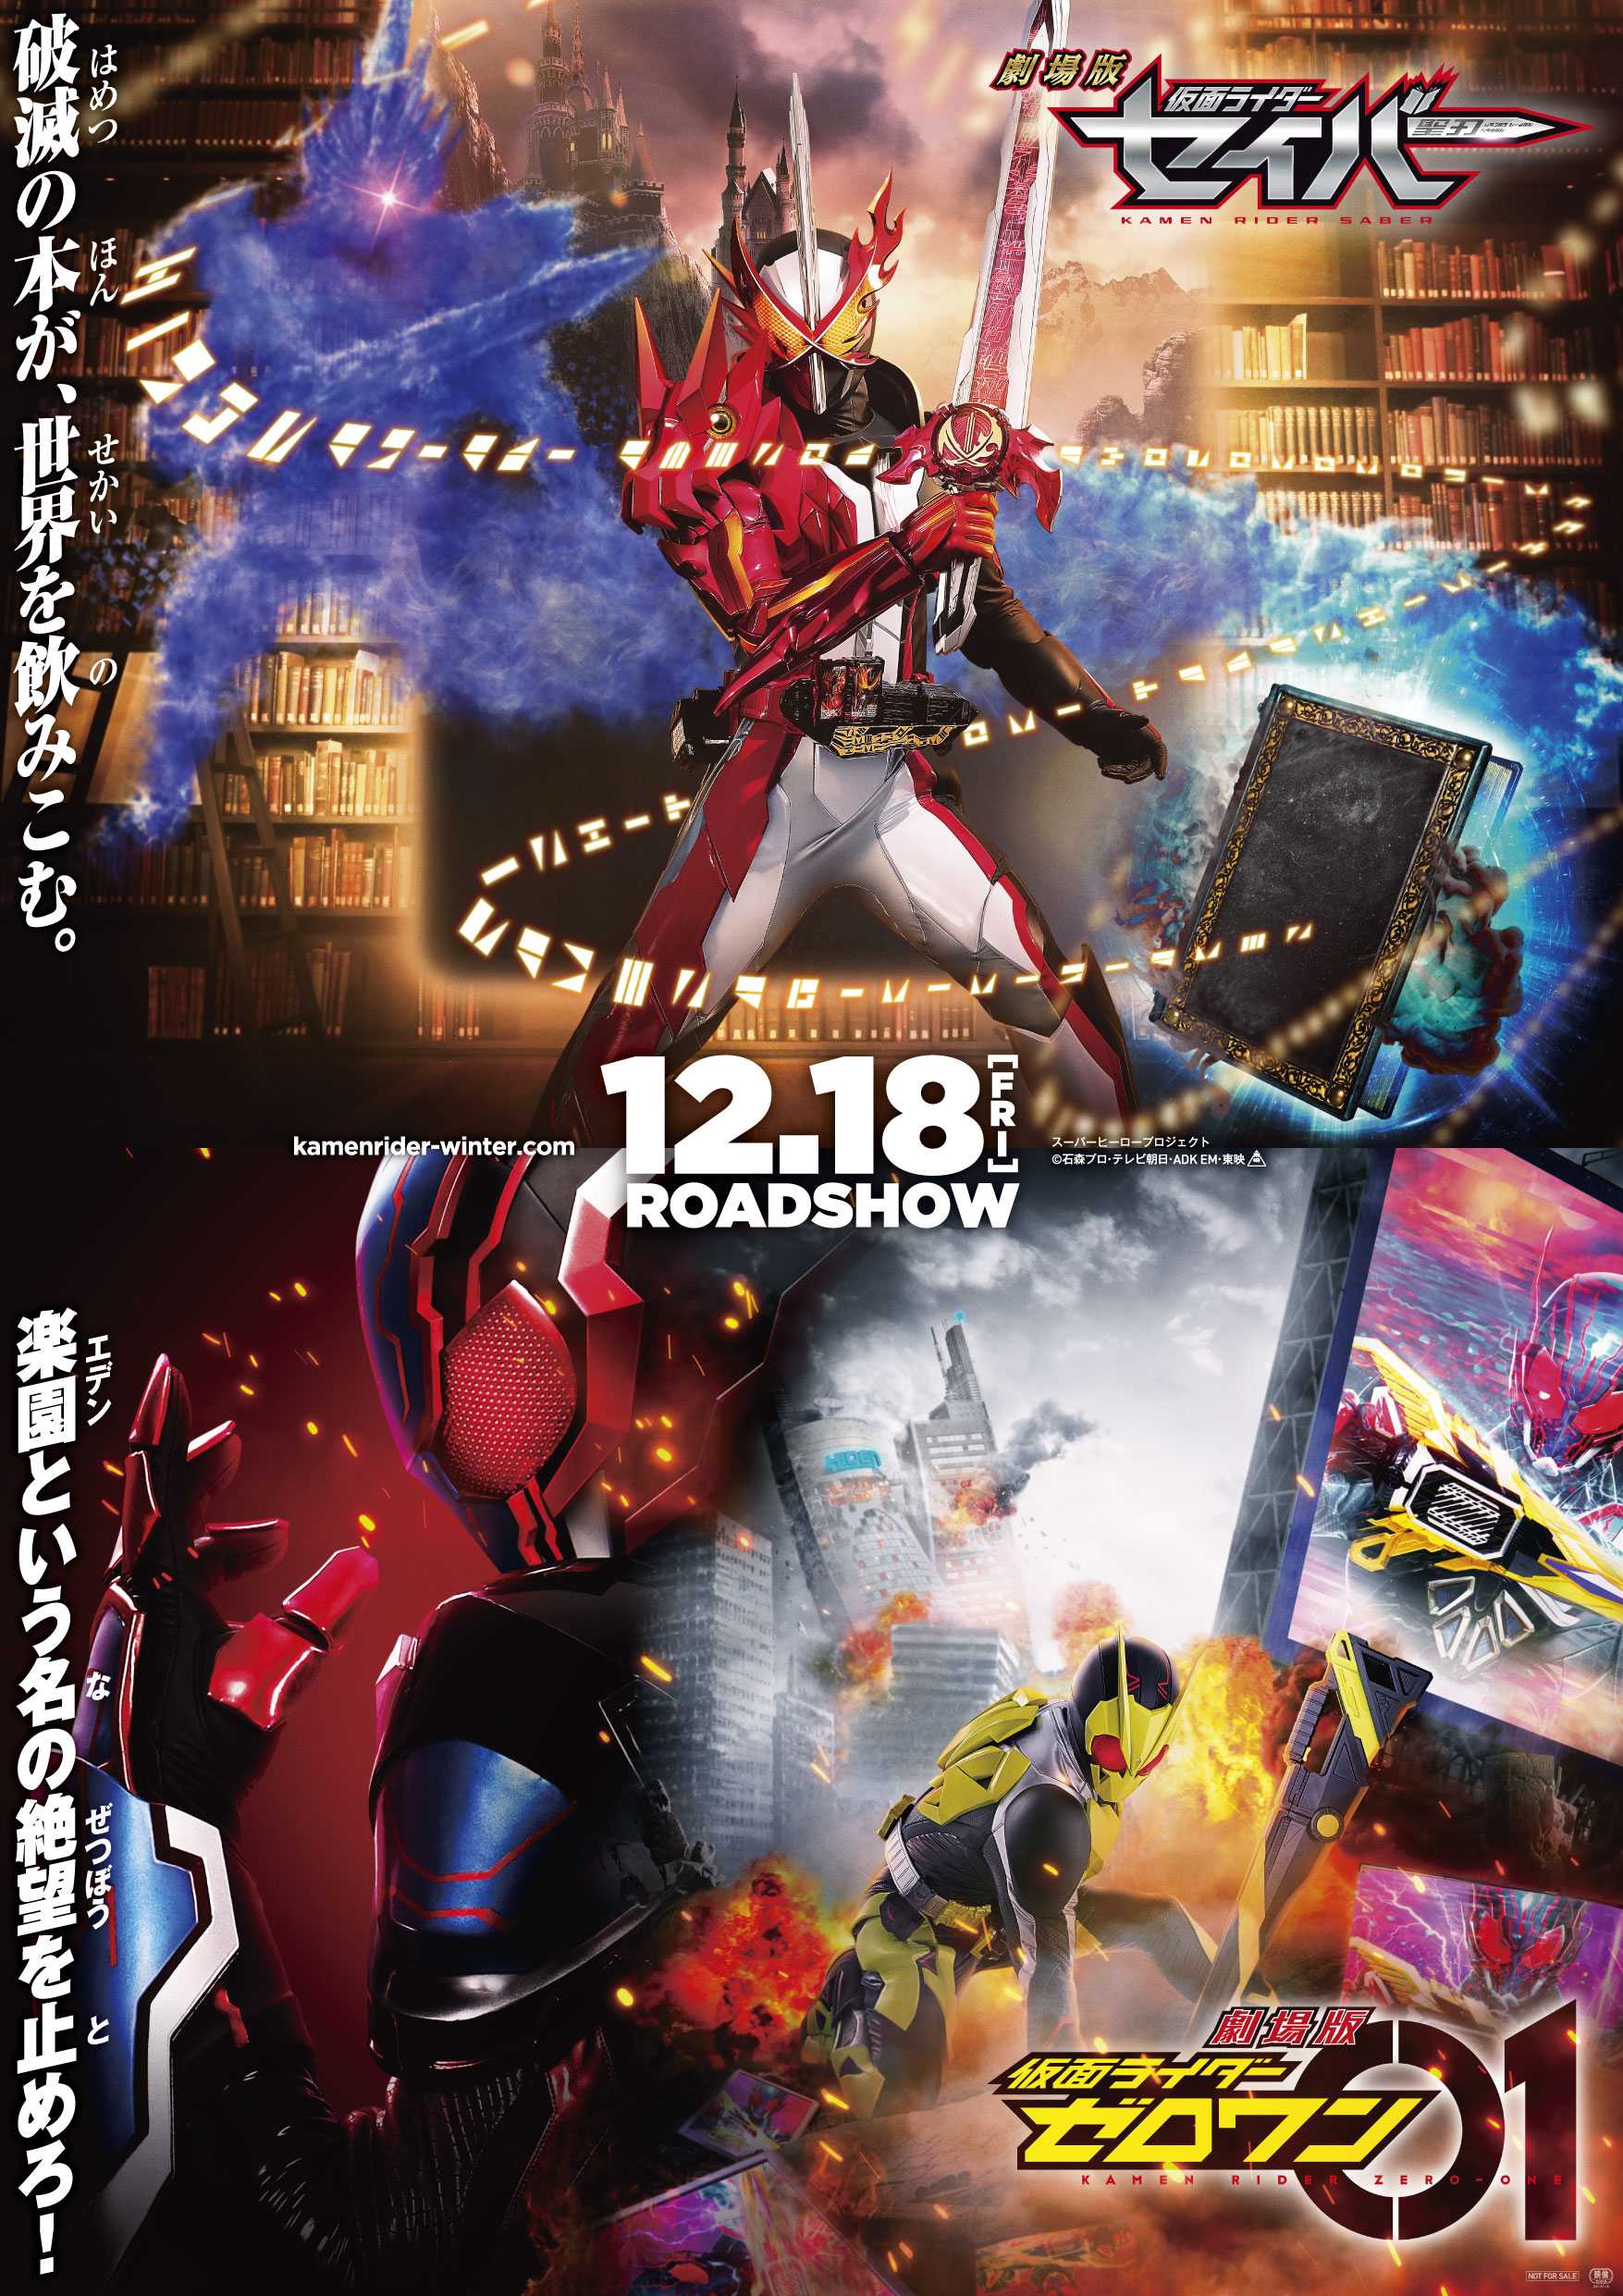 Kamen Rider Saber And Kamen Rider Zero One Movie Teaser Released Tokunation